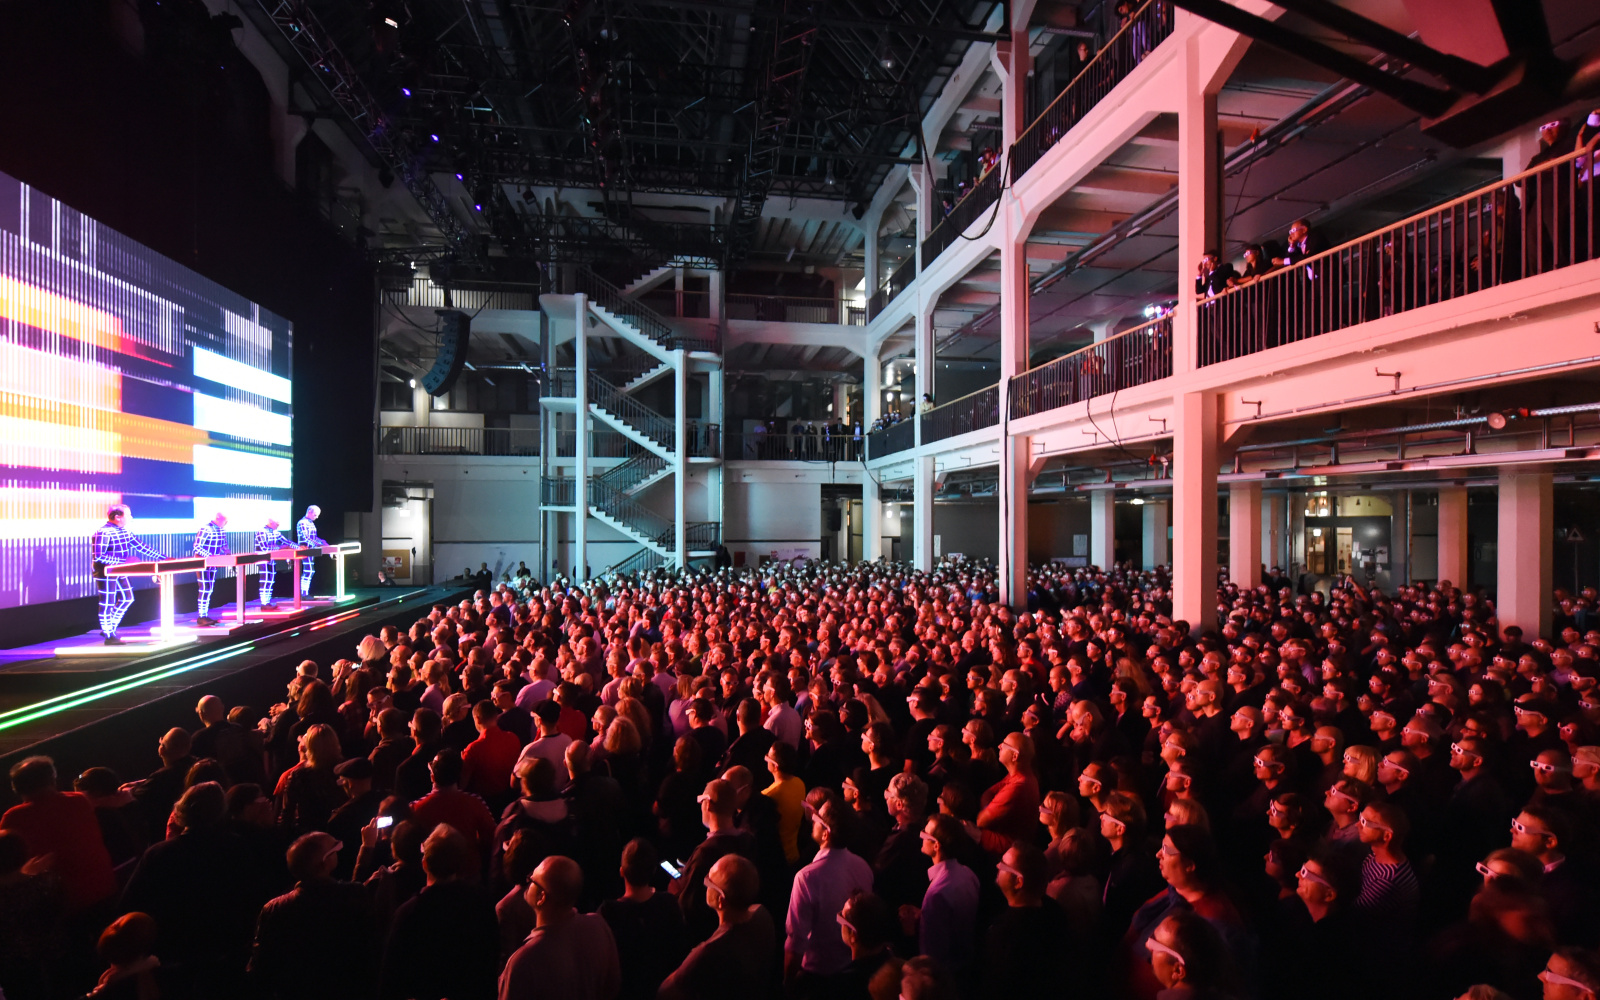 1500 Personen schauen mit 3D-Brillen auf die Bühne, die sich links im Bild befindet